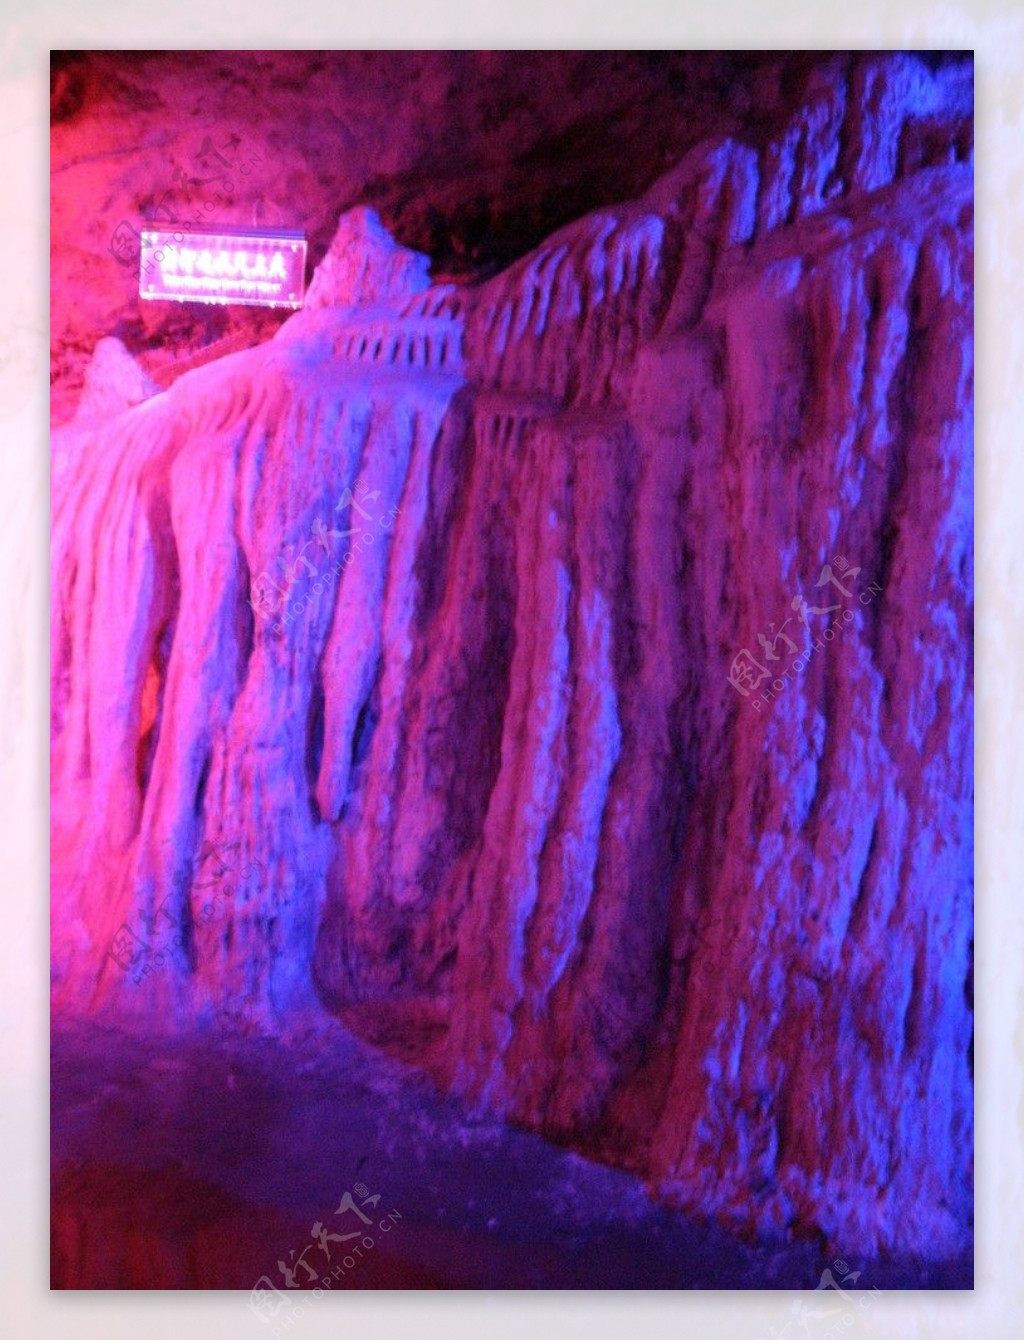 神农山地下溶洞奇景图片